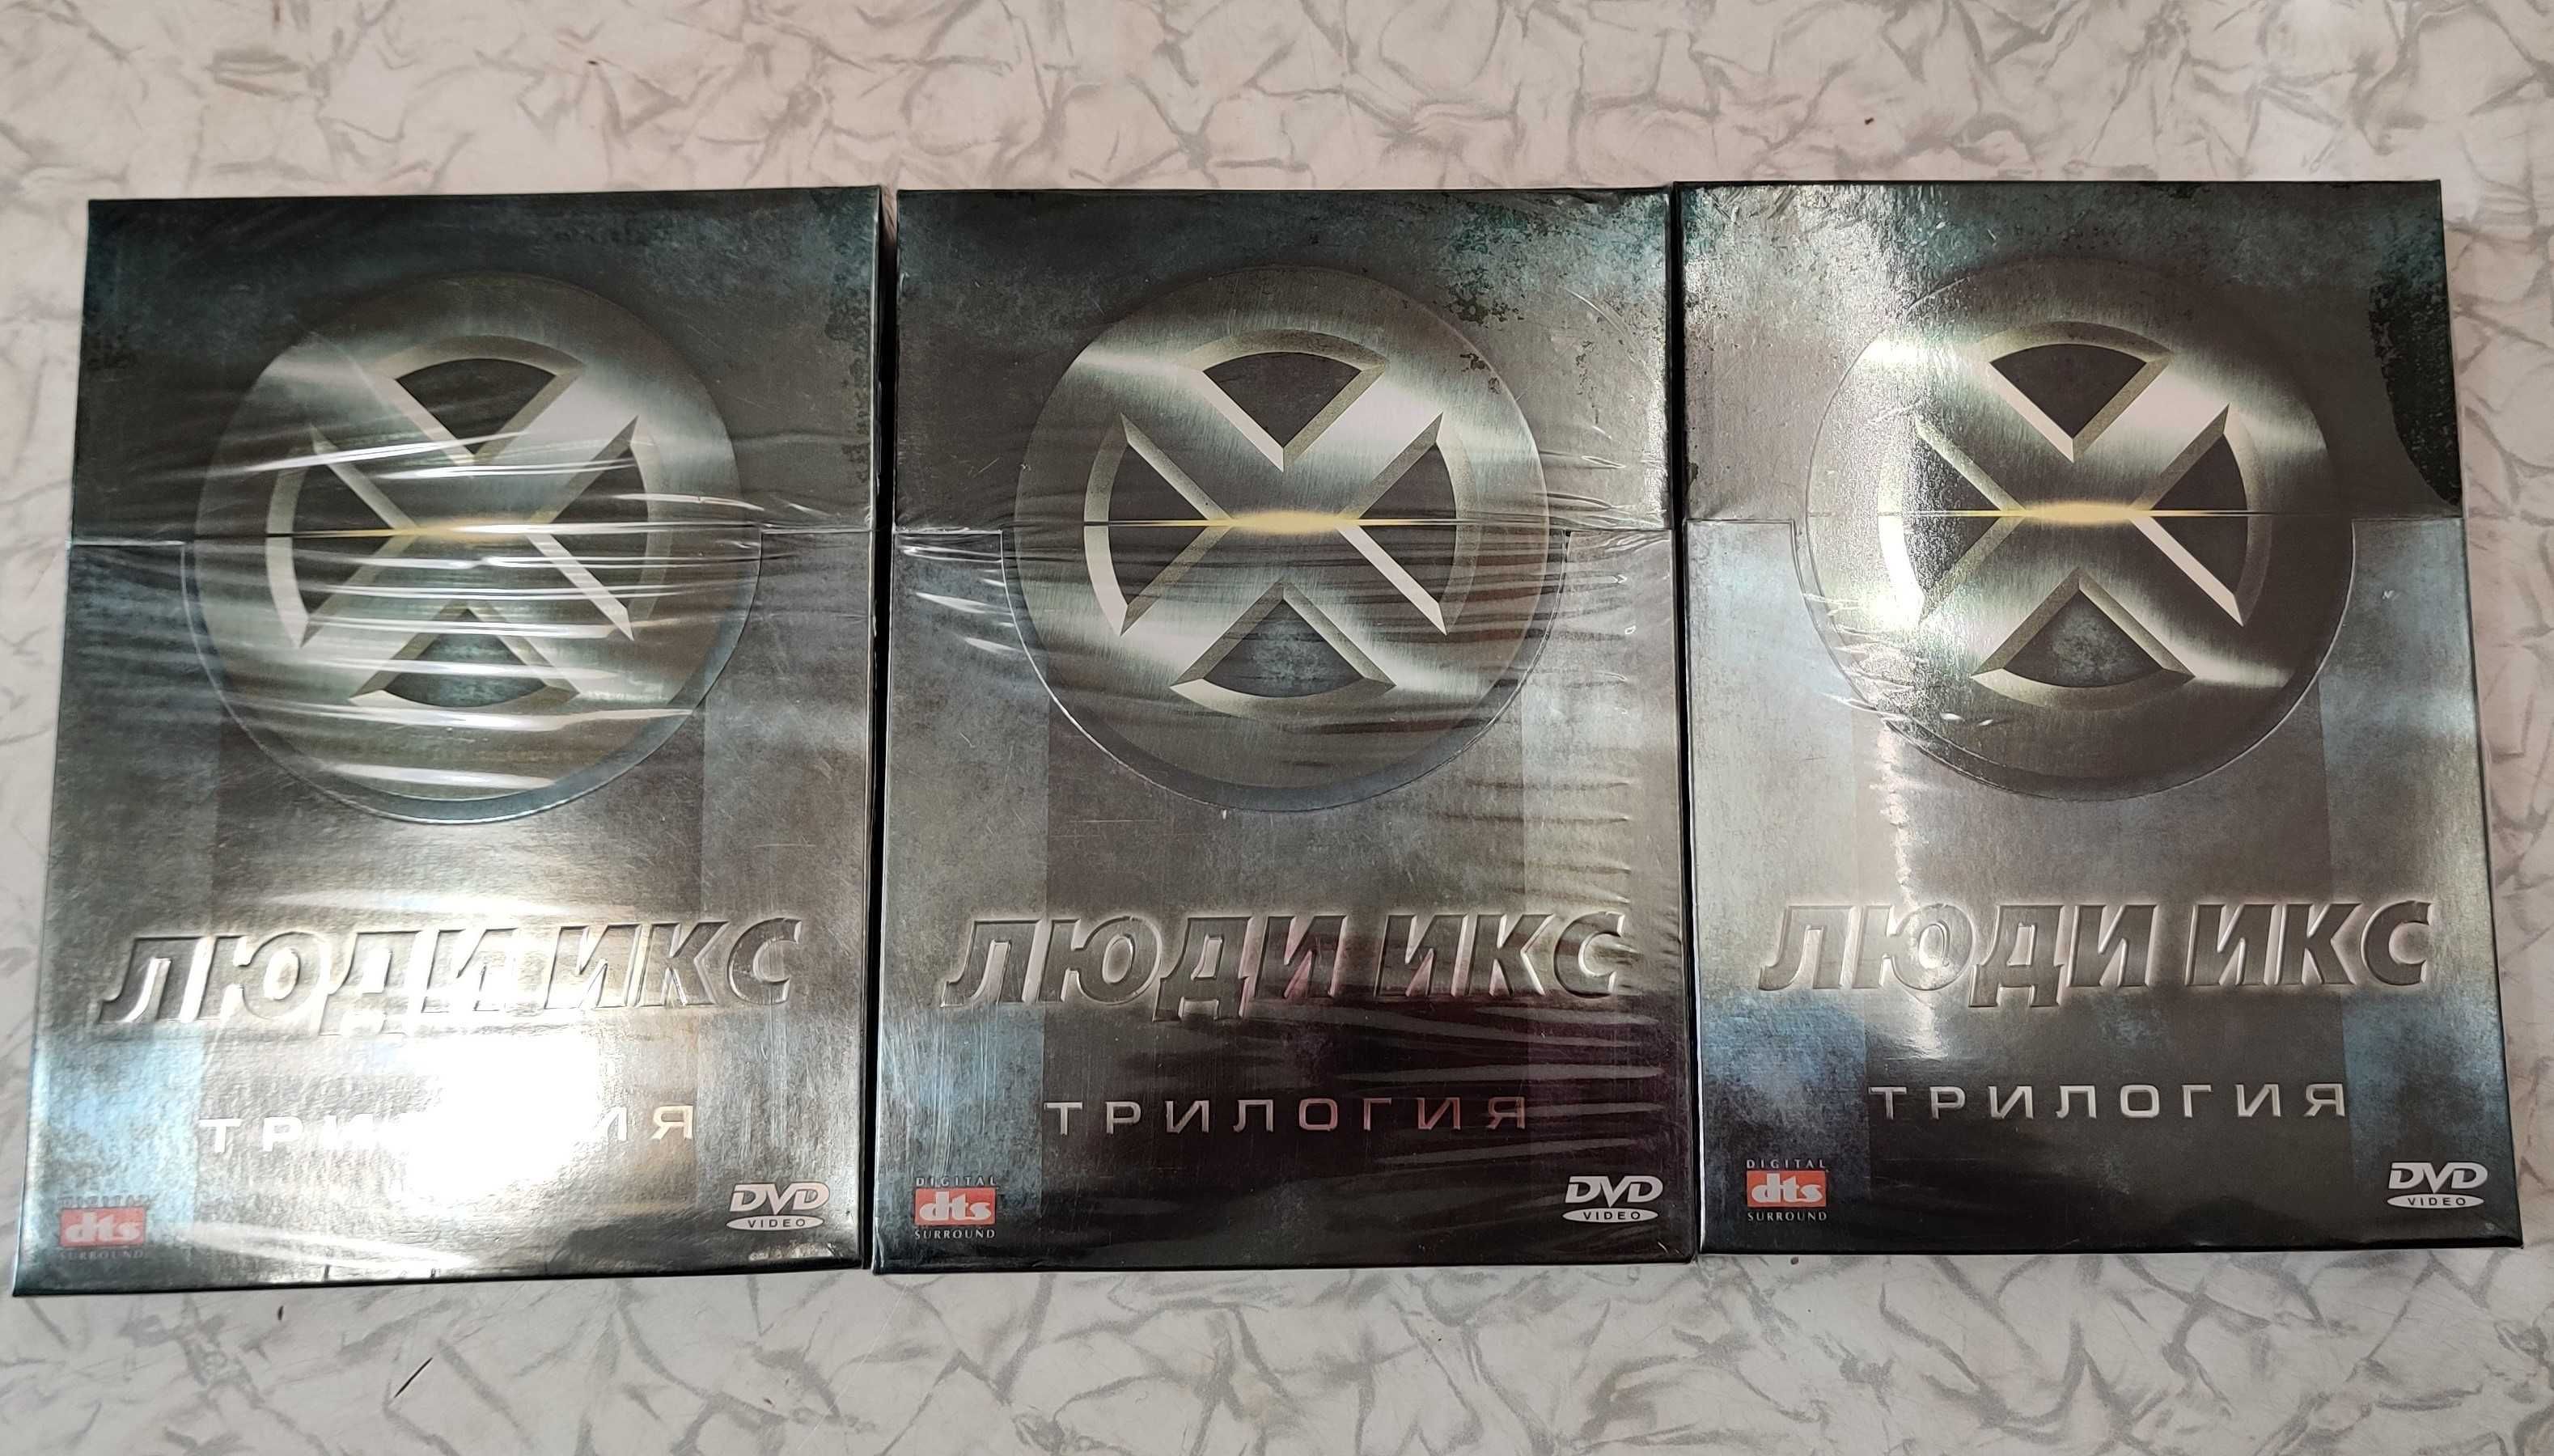 Діджибокс "Люди Икс" - Колекційне DVD видання // X-man